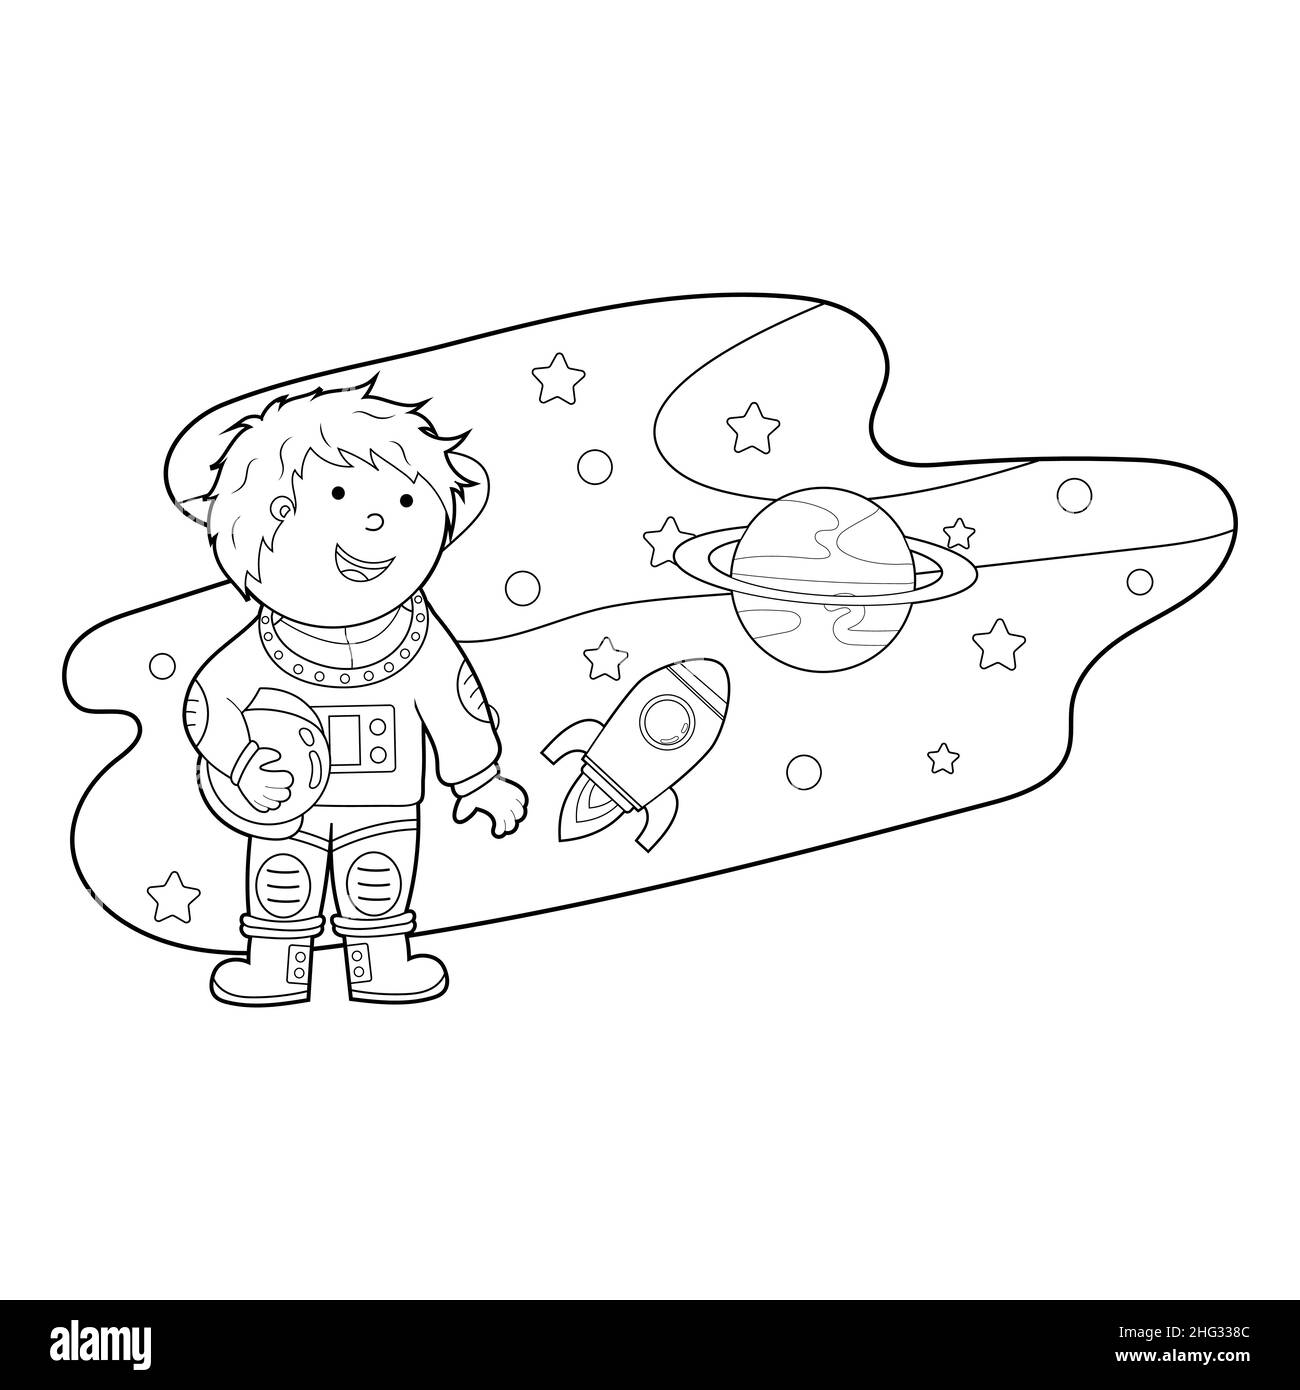 livre de coloriage, colorier une illustration de dessin animé d'un astronaute dans l'espace, vecteur isolé sur un fond blanc Illustration de Vecteur